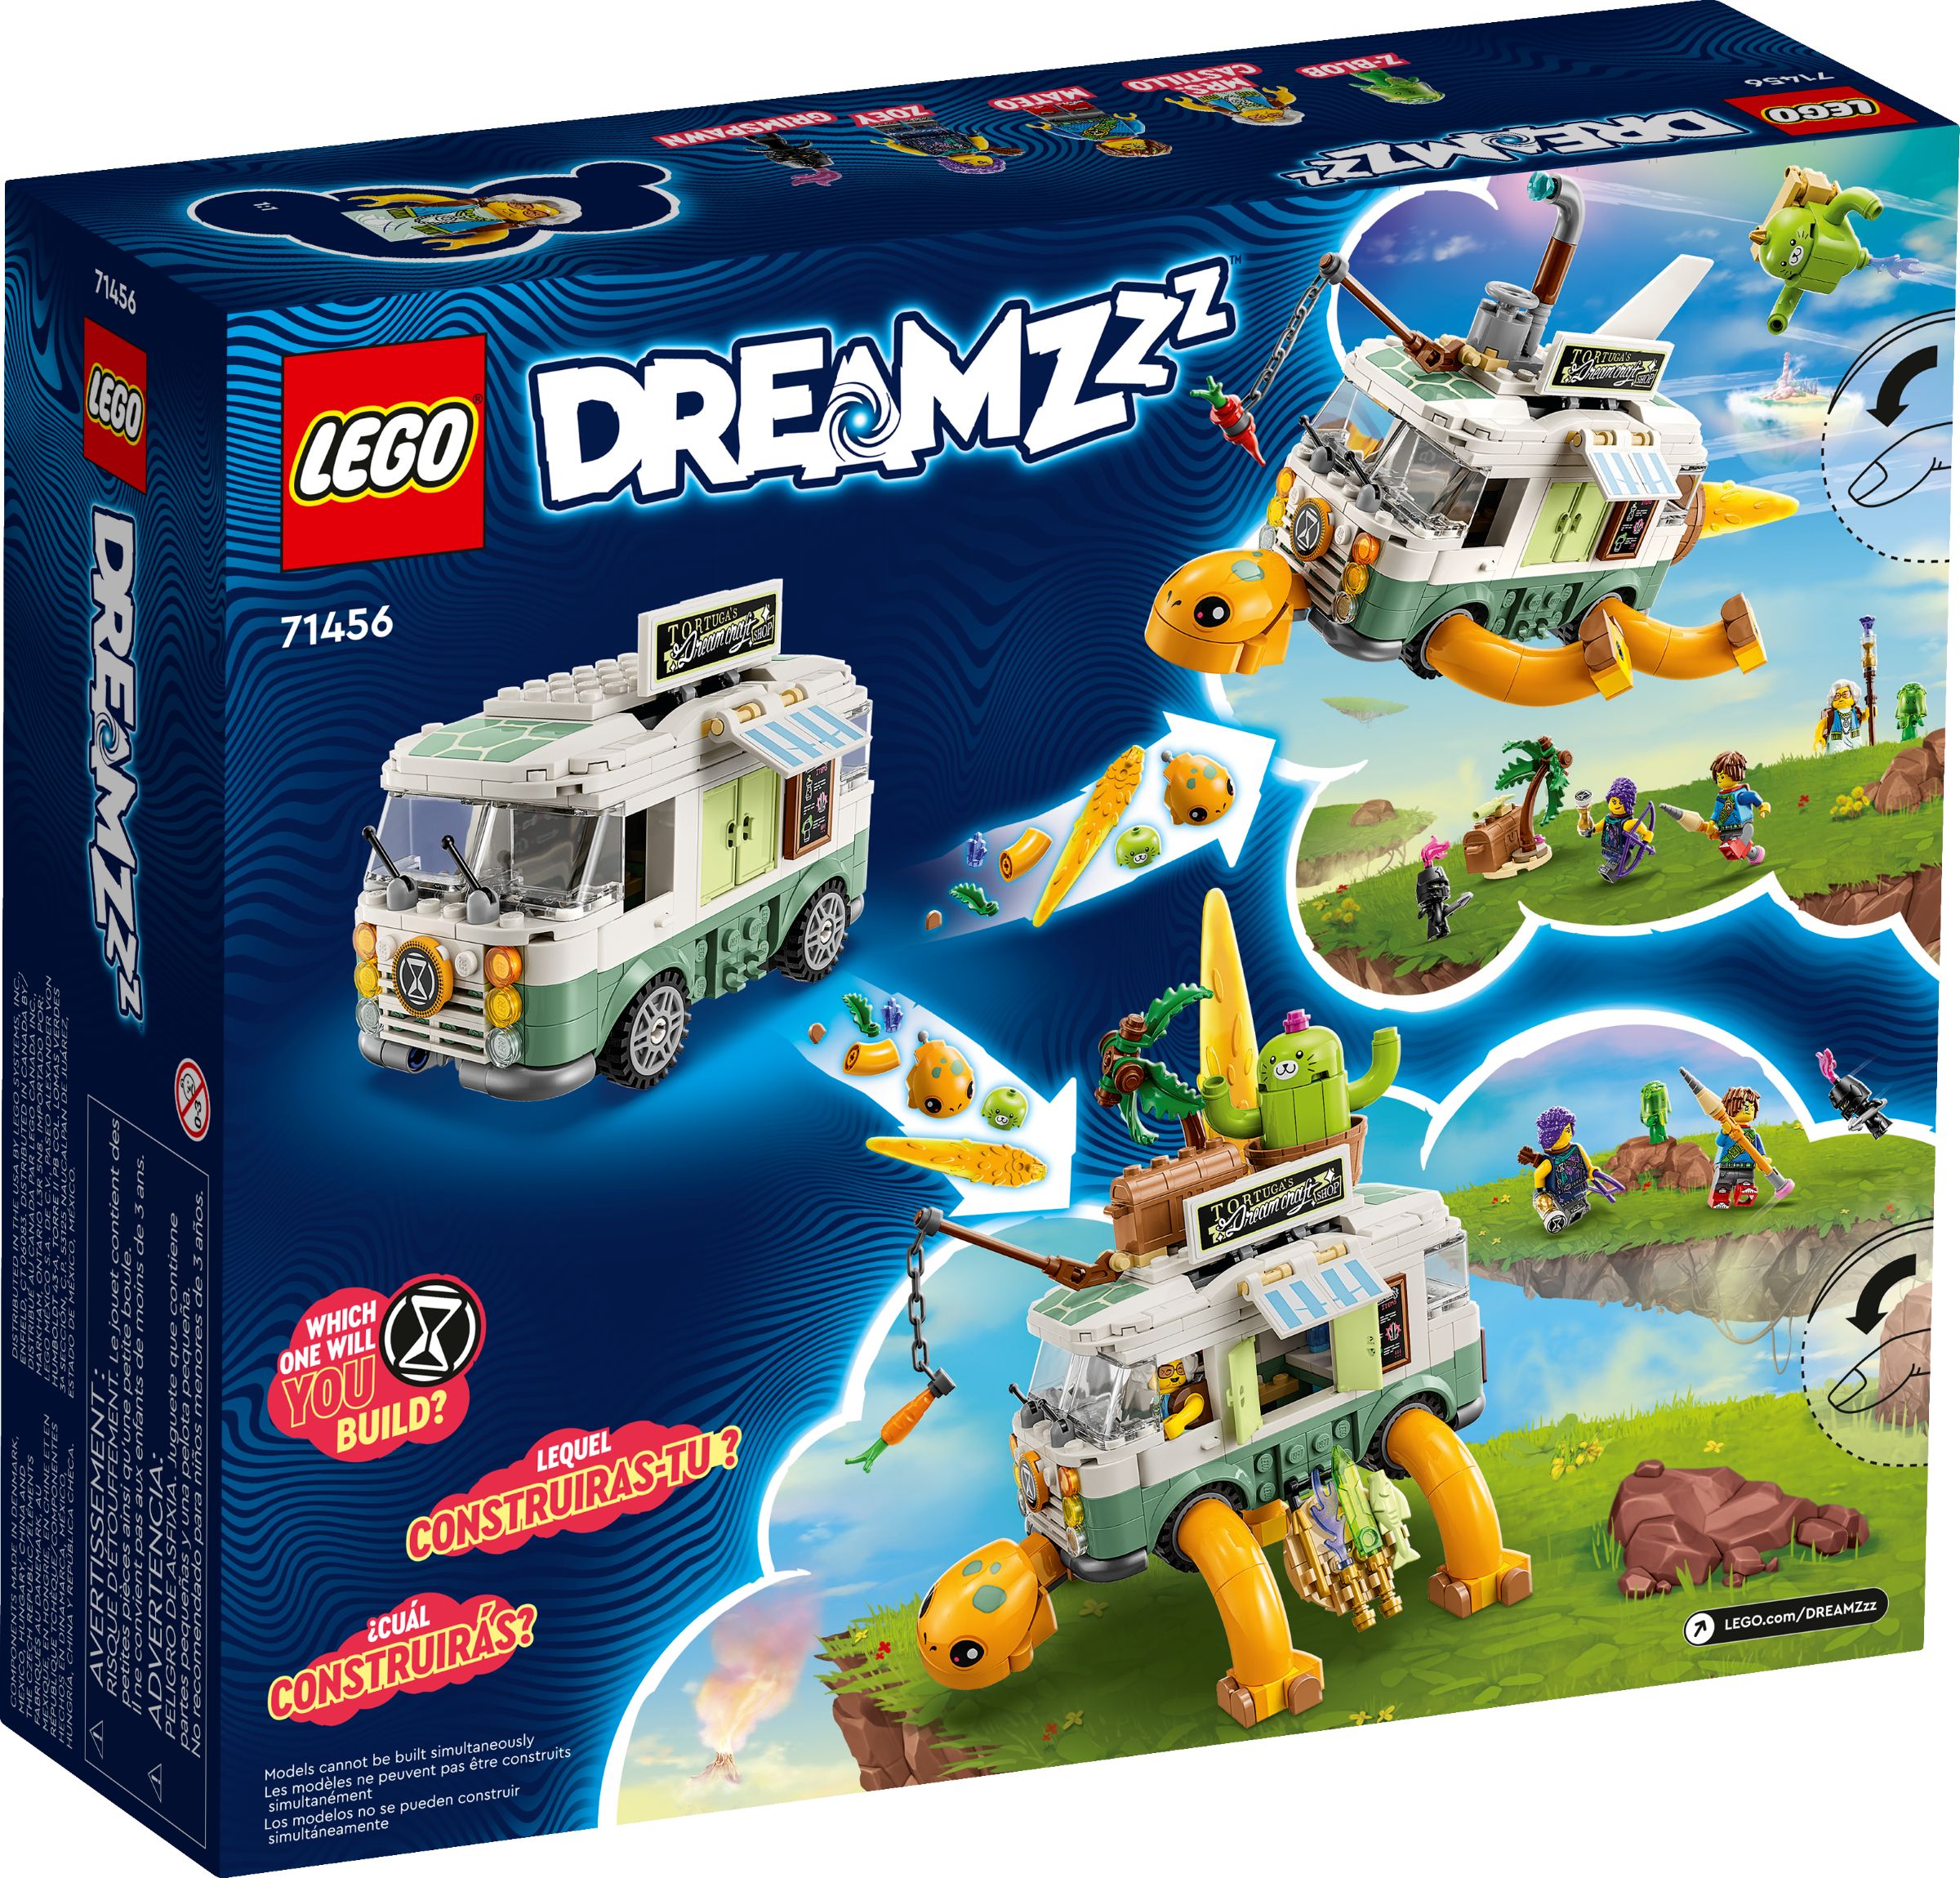 LEGO Dreamzzz 71456 Mrs. Castillos Schildkrötenbus LEGO_71456_alt2.jpg